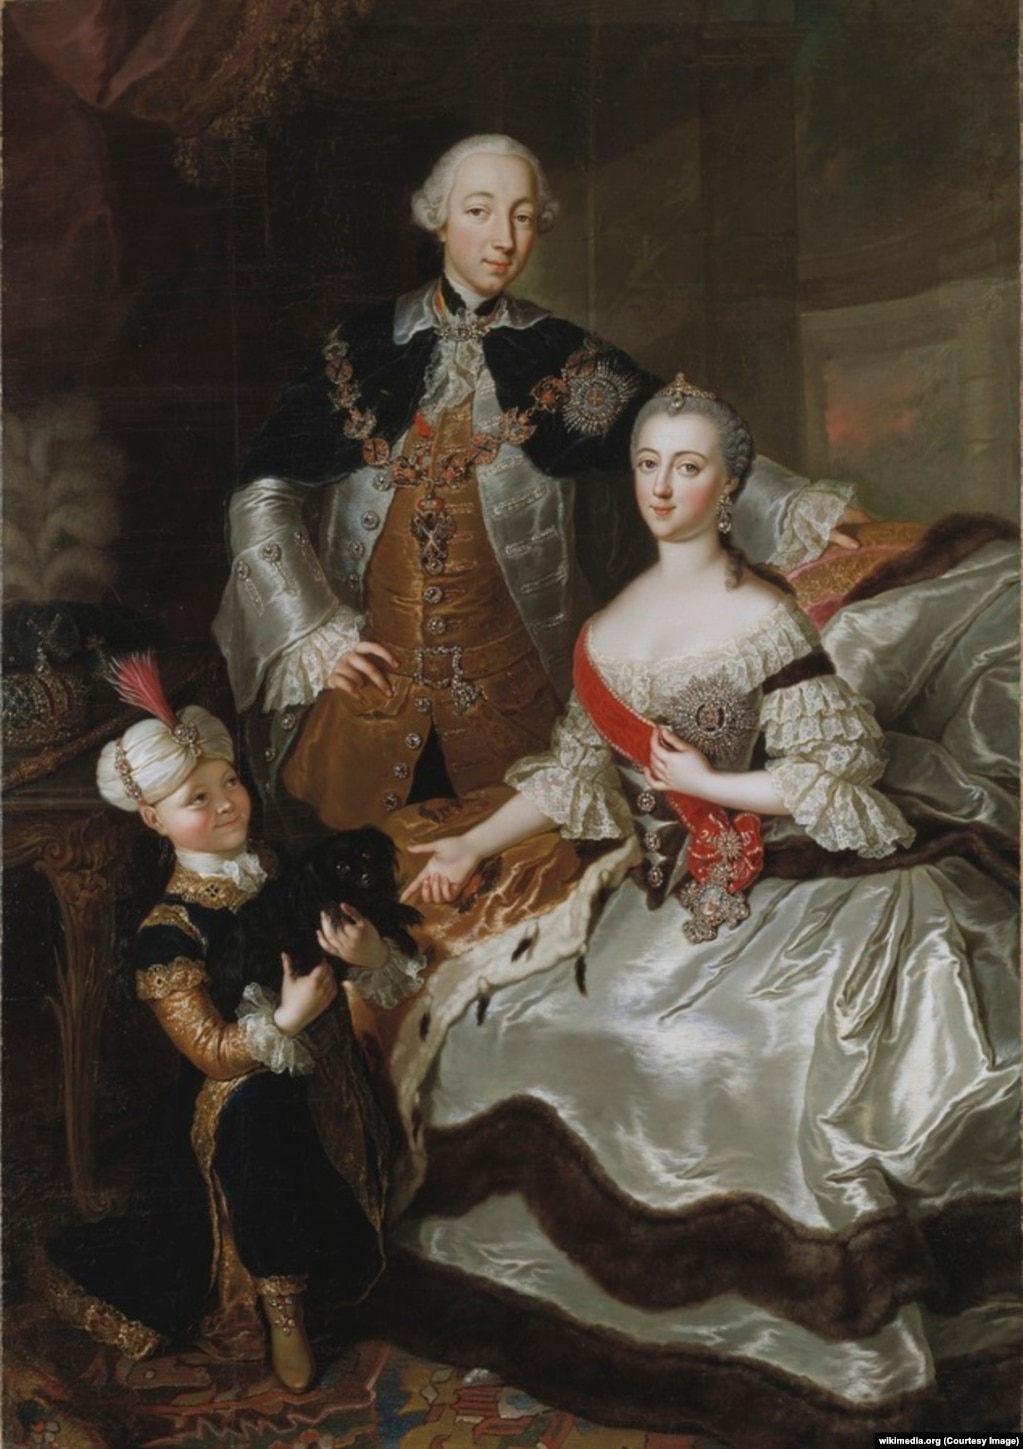 Петро ІІІ, Катерина ІІ та їхній син, майбутній імператор Павло І, картина Анни де Гаск, 1765 рік